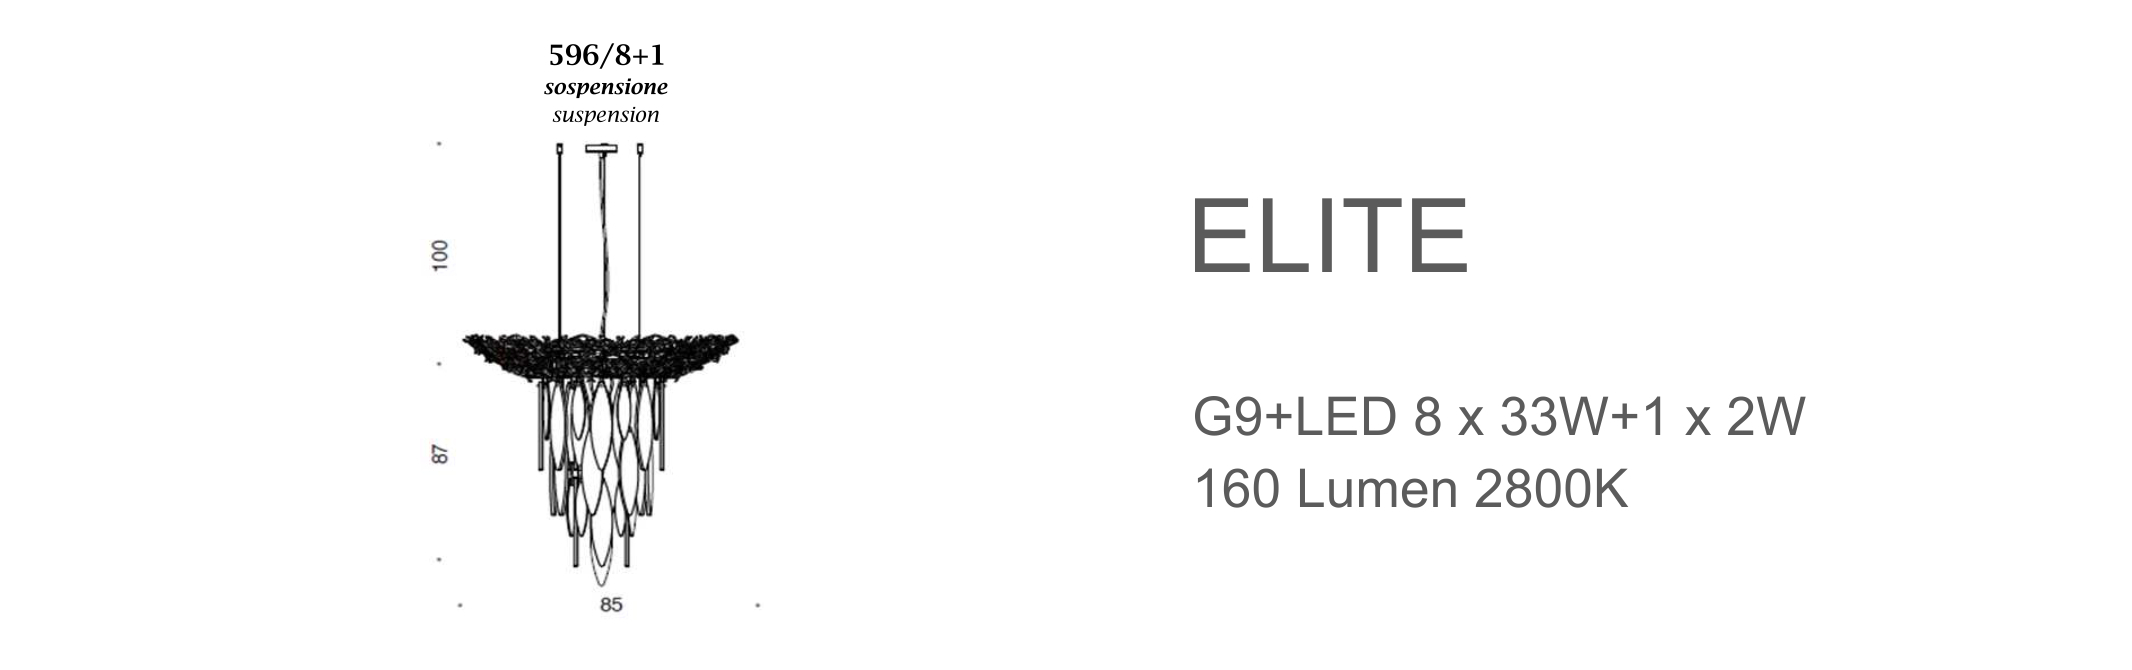 Elite 596/8+1